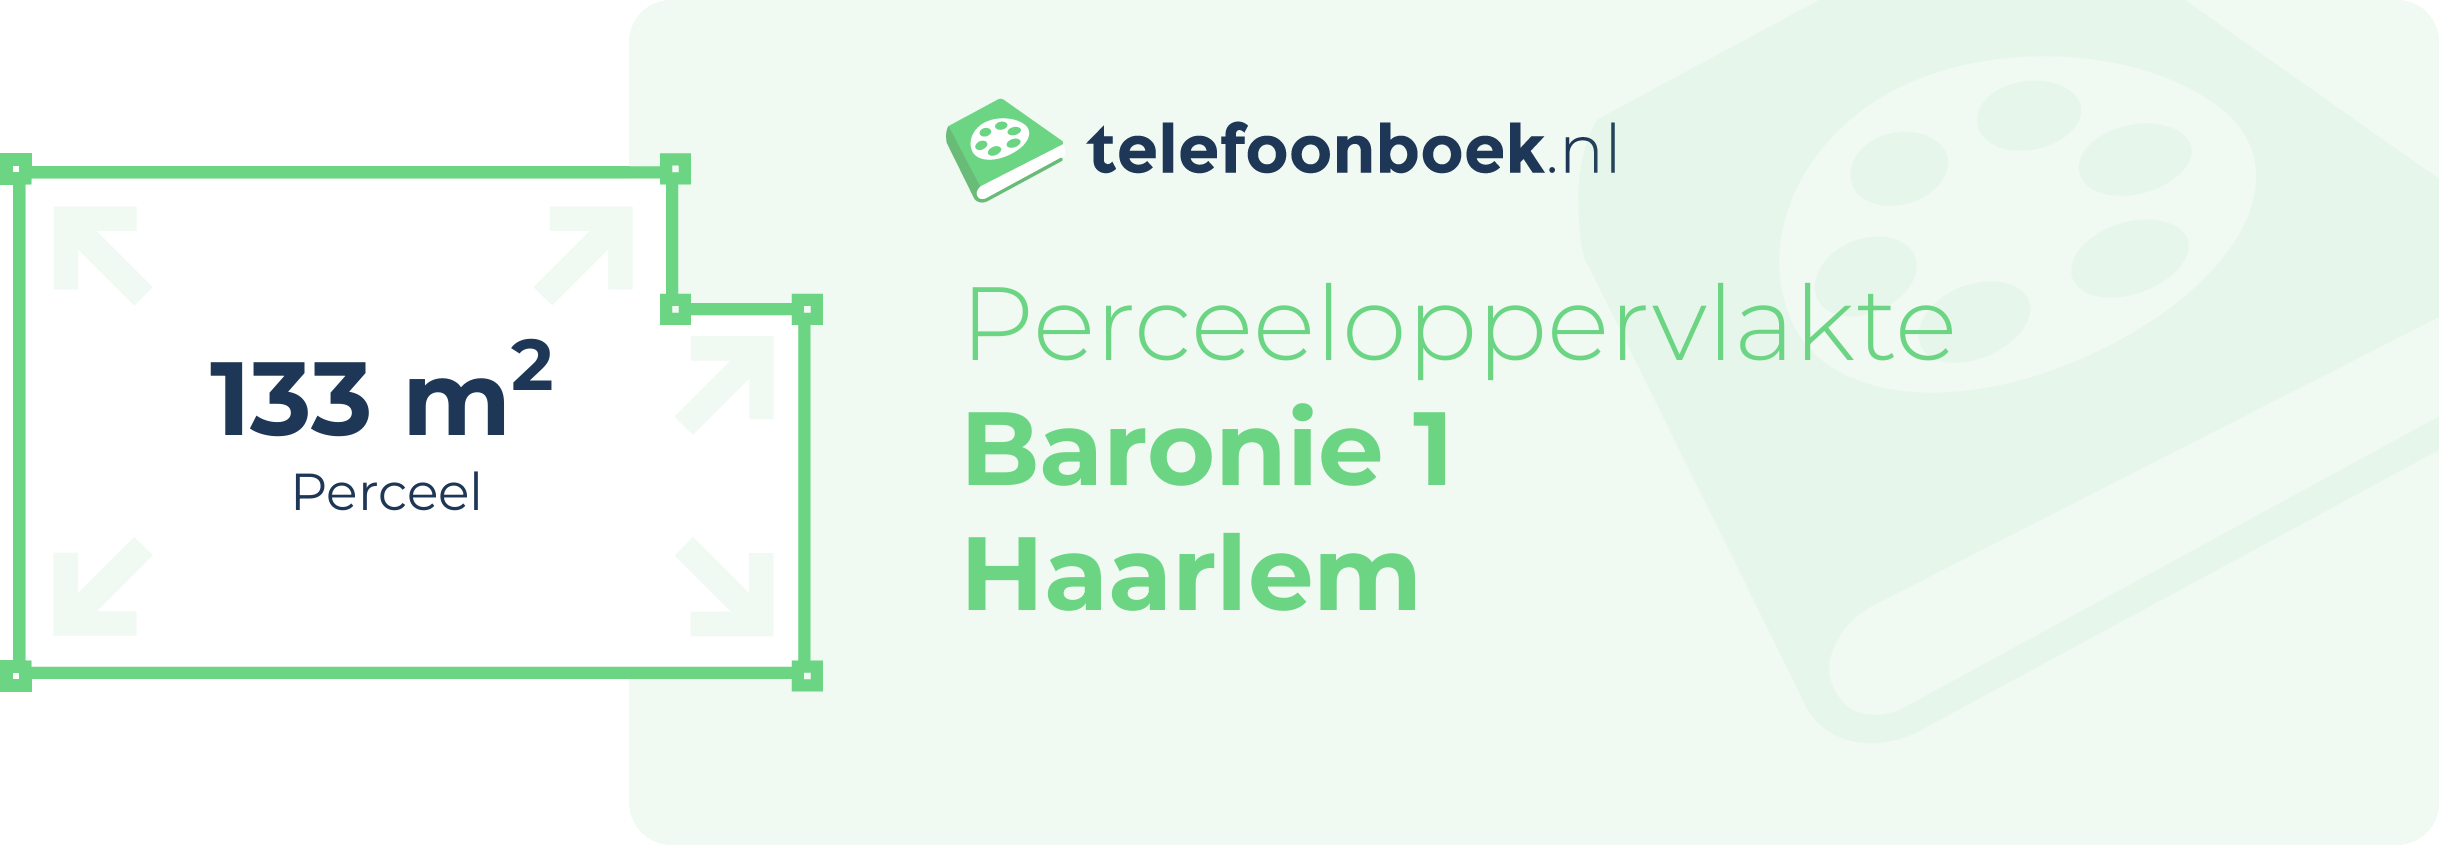 Perceeloppervlakte Baronie 1 Haarlem